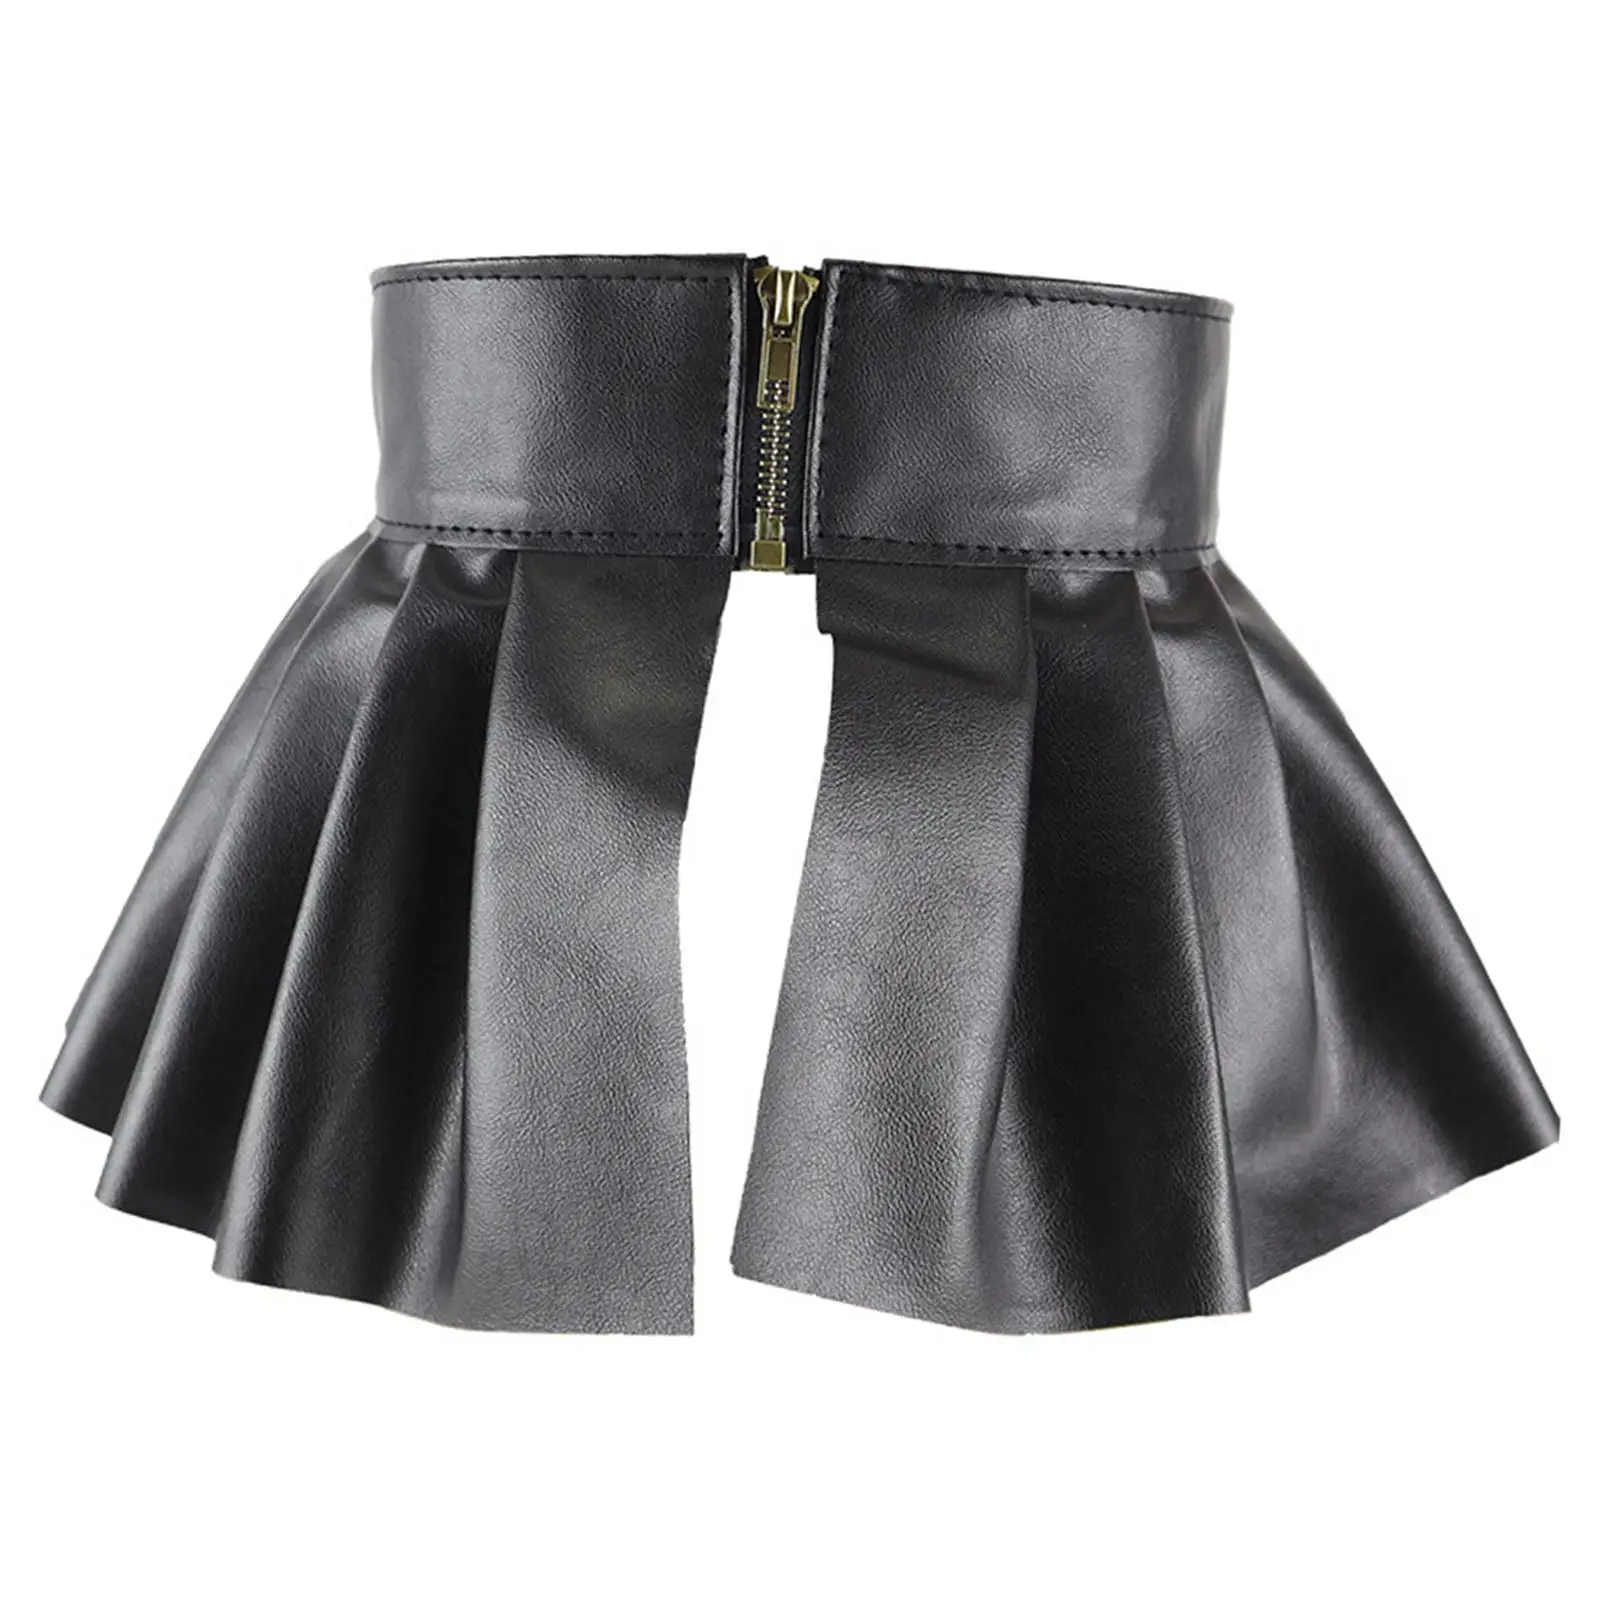 Waist Belt Skirts Wide Adjustable High Waist Cosplay Women Charm Waistband